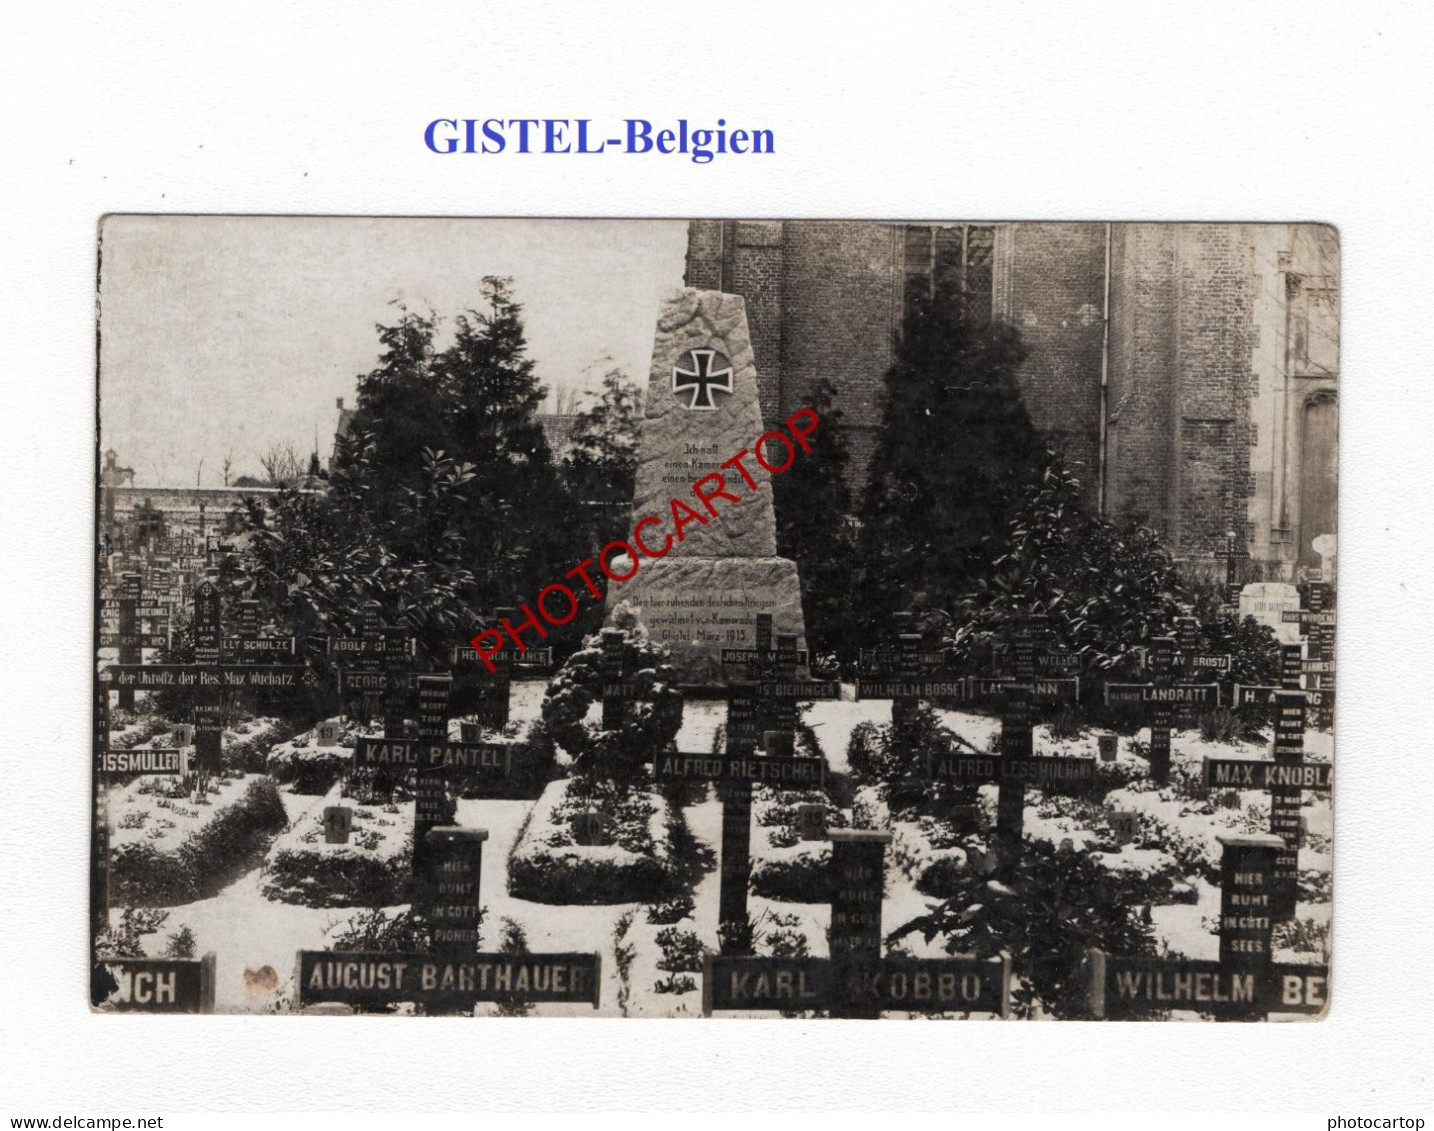 GISTEL-Cimetiere-Tombes-Monument-CARTE PHOTO Allemande-GUERRE 14-18-1 WK-MILITARIA- - Cimetières Militaires